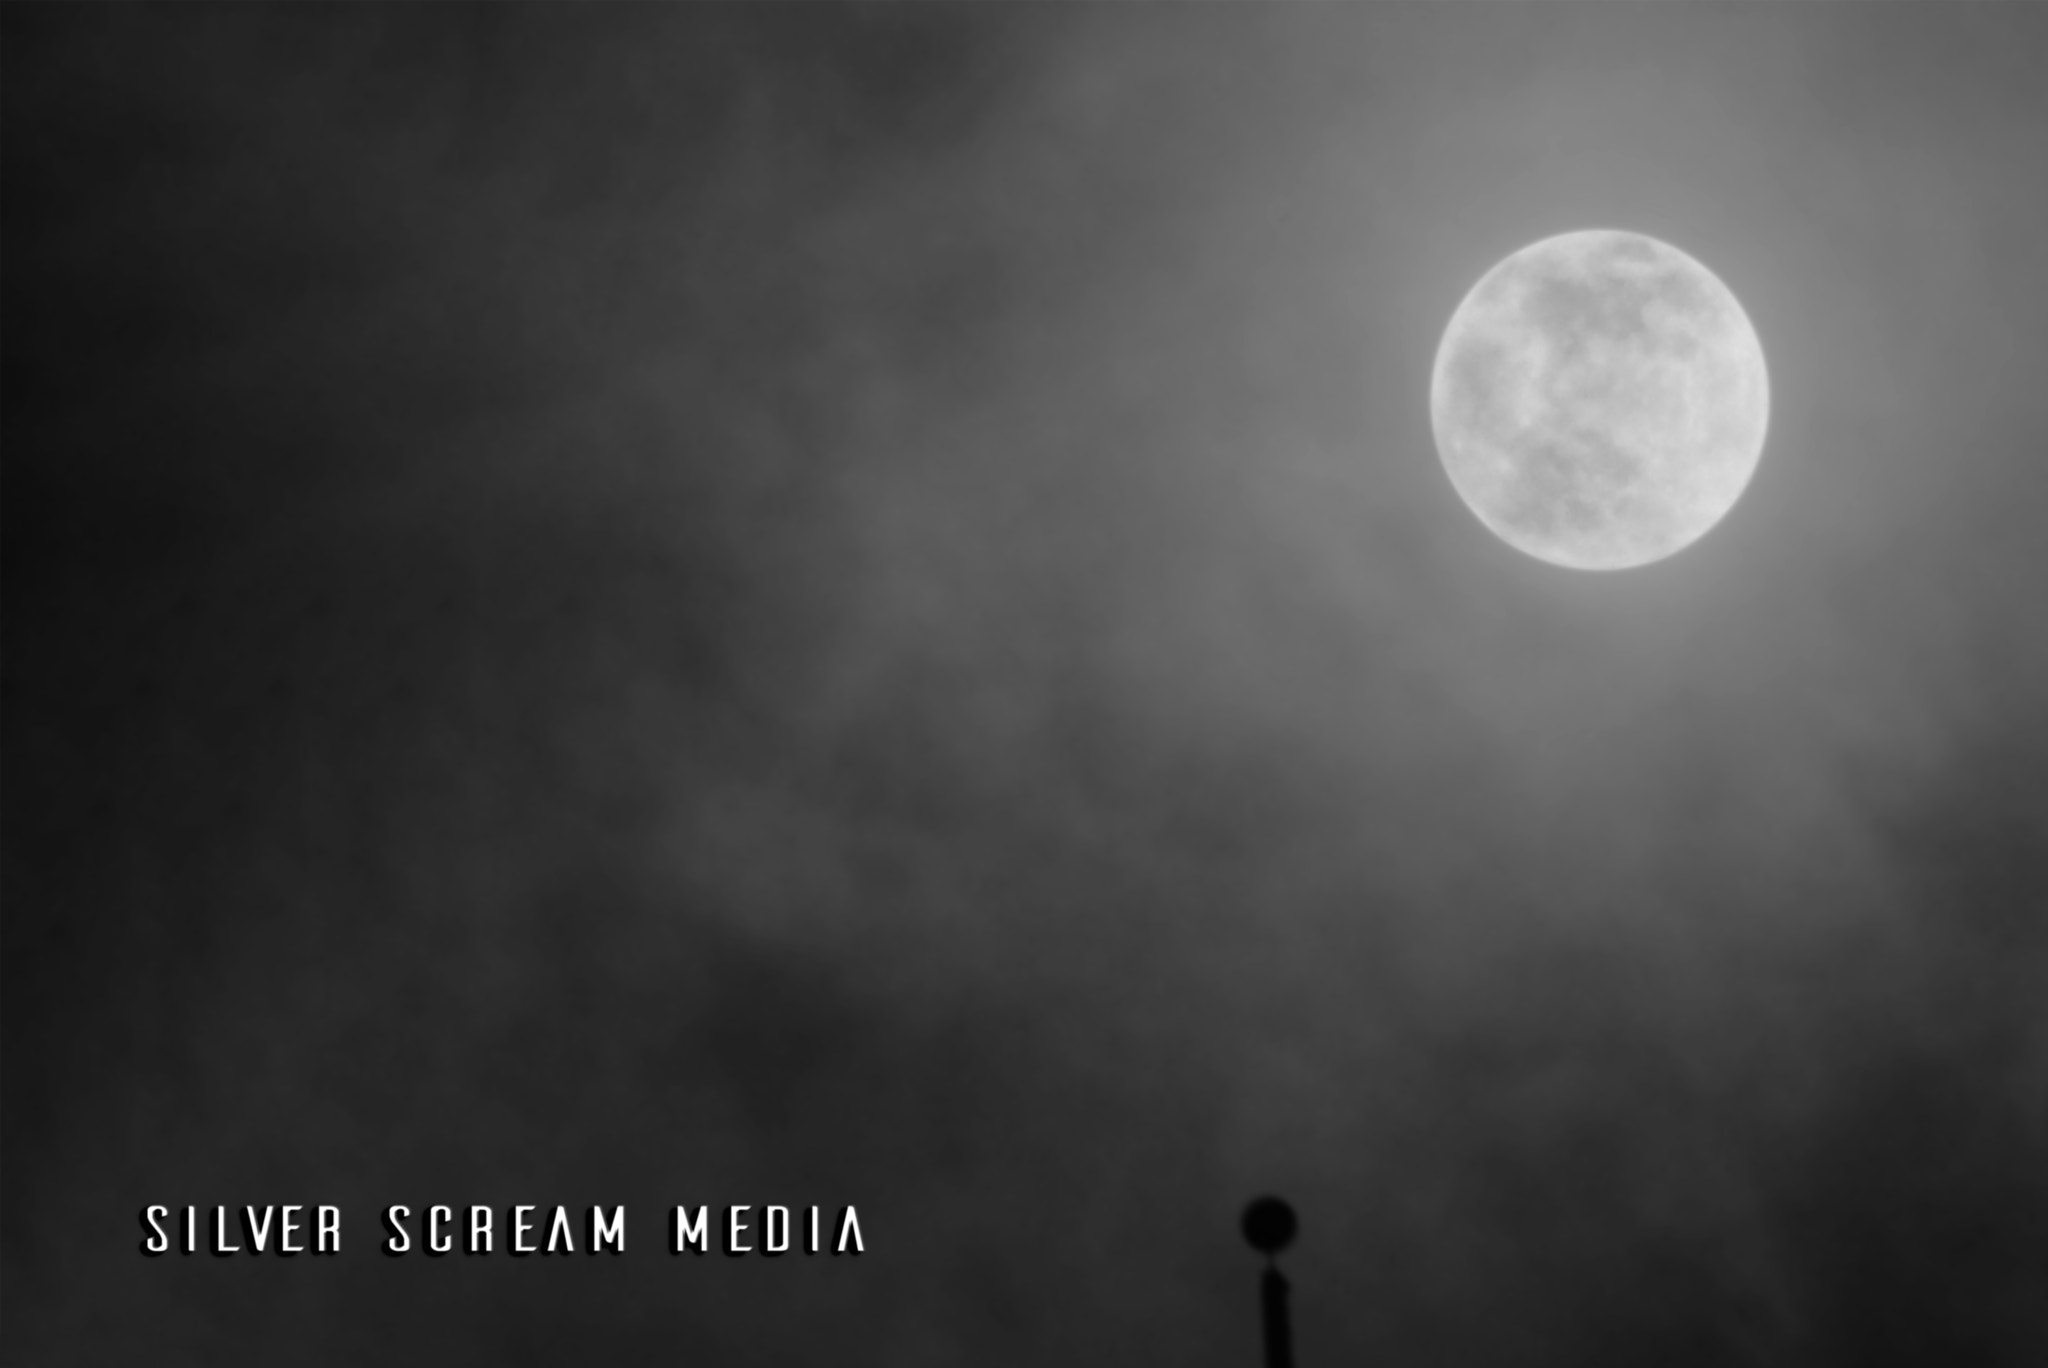 Nikon D5200 + AF Nikkor 300mm f/4 IF-ED sample photo. Moon misty light photography